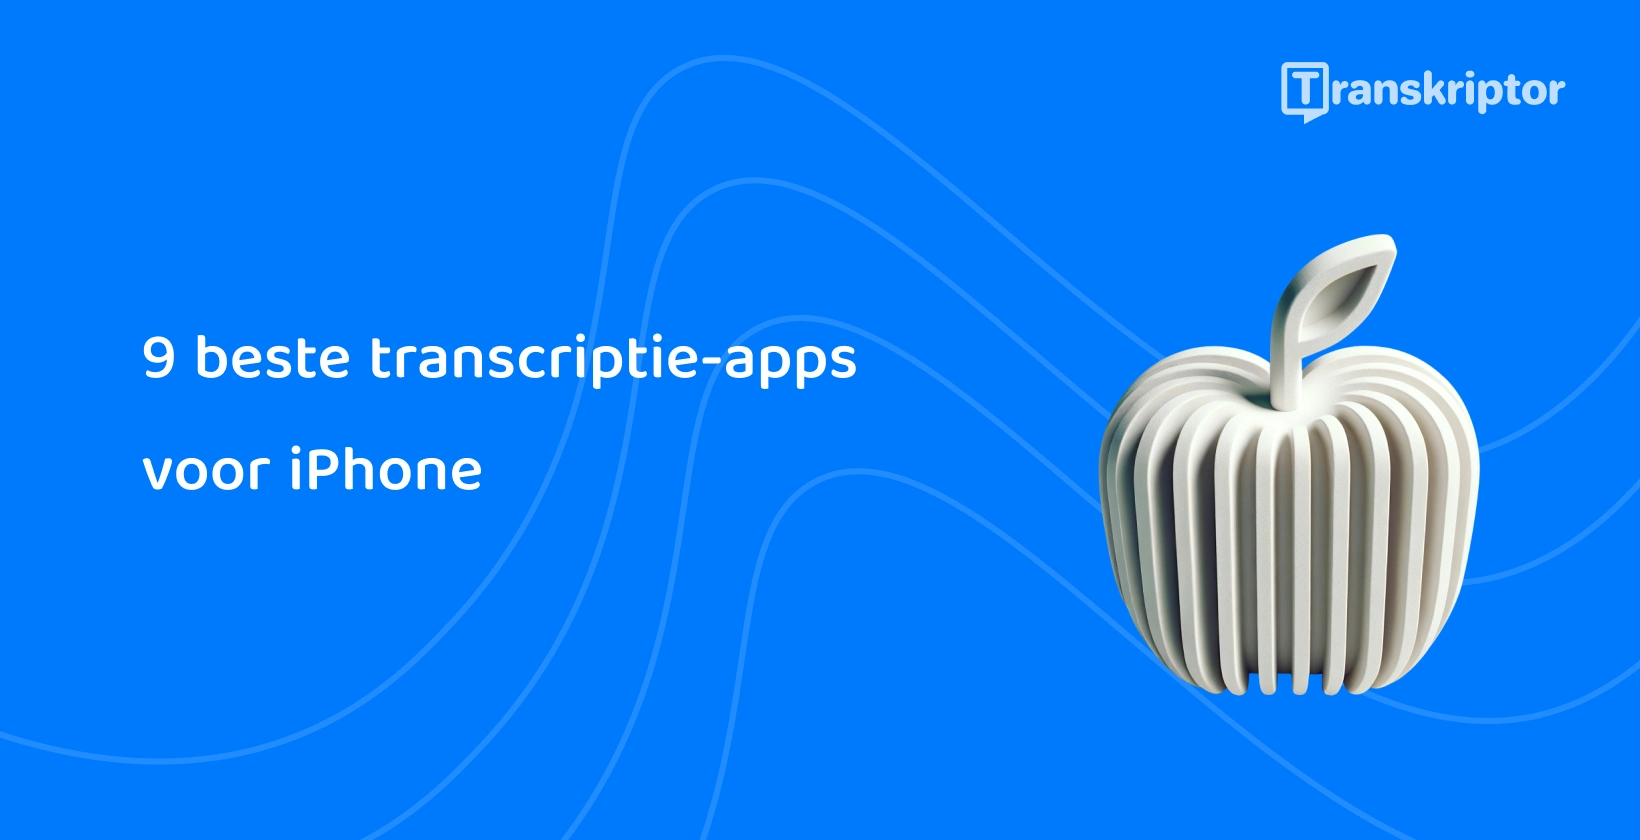 Gestileerde appel met geluidsgolven vertegenwoordigt de beste transcriptie-apps die beschikbaar zijn voor iPhone gebruikers.